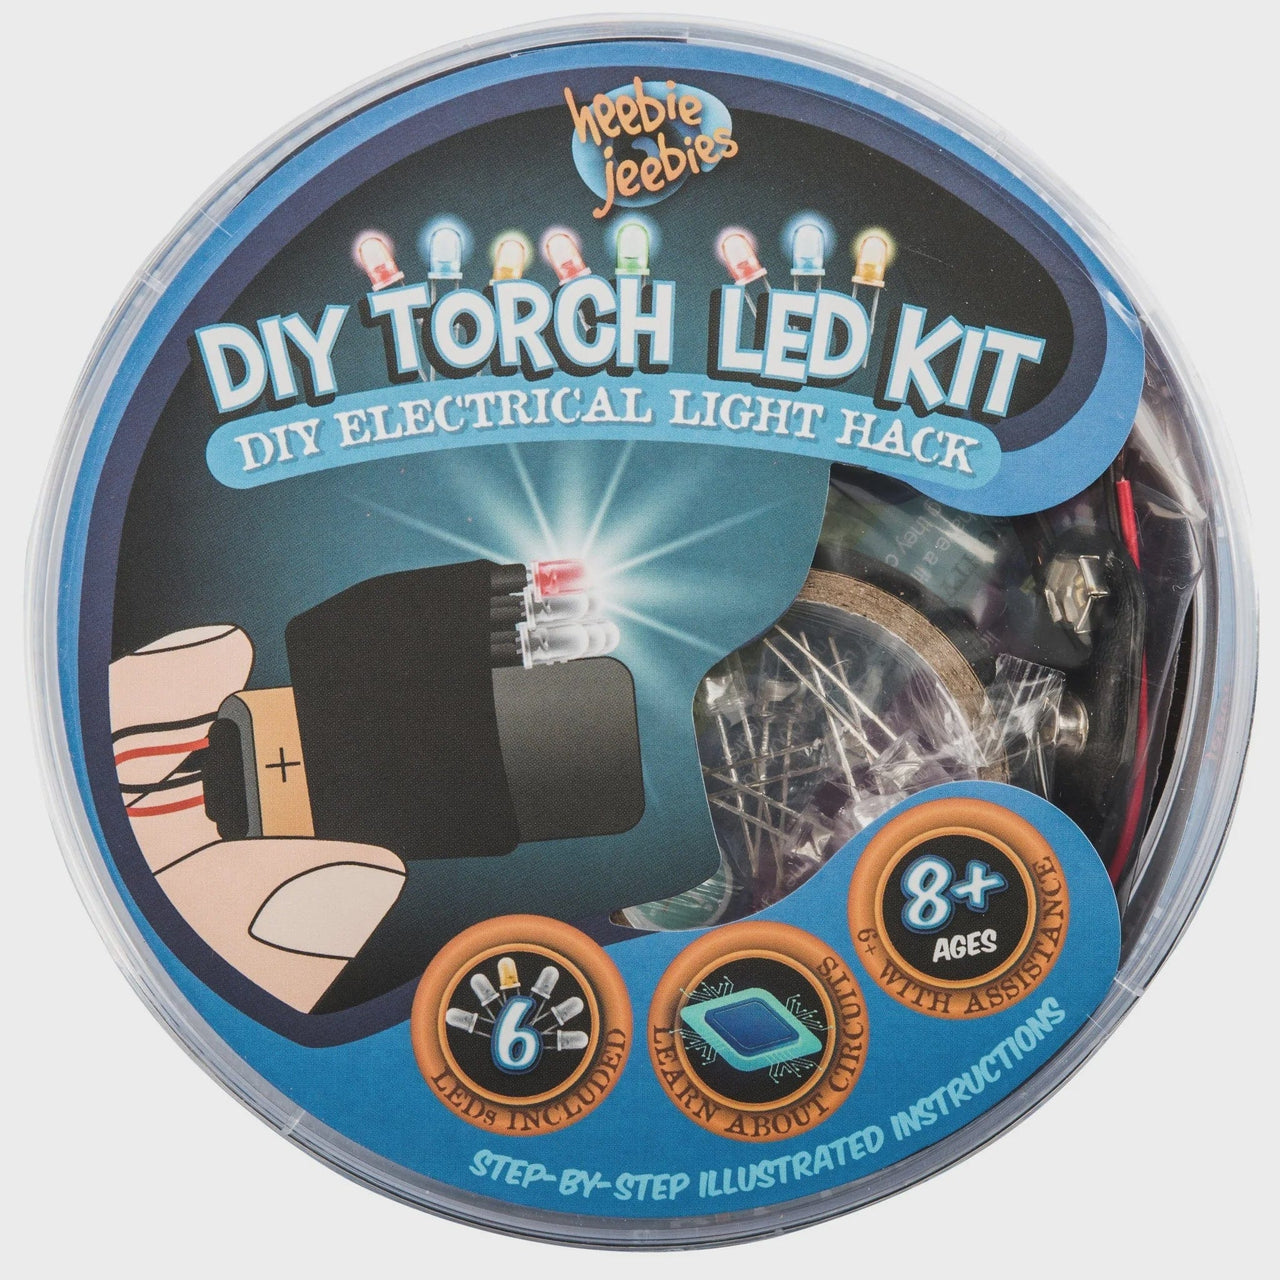 heebie jeebies General Heebie Jeebies DIY LED Torch Kit